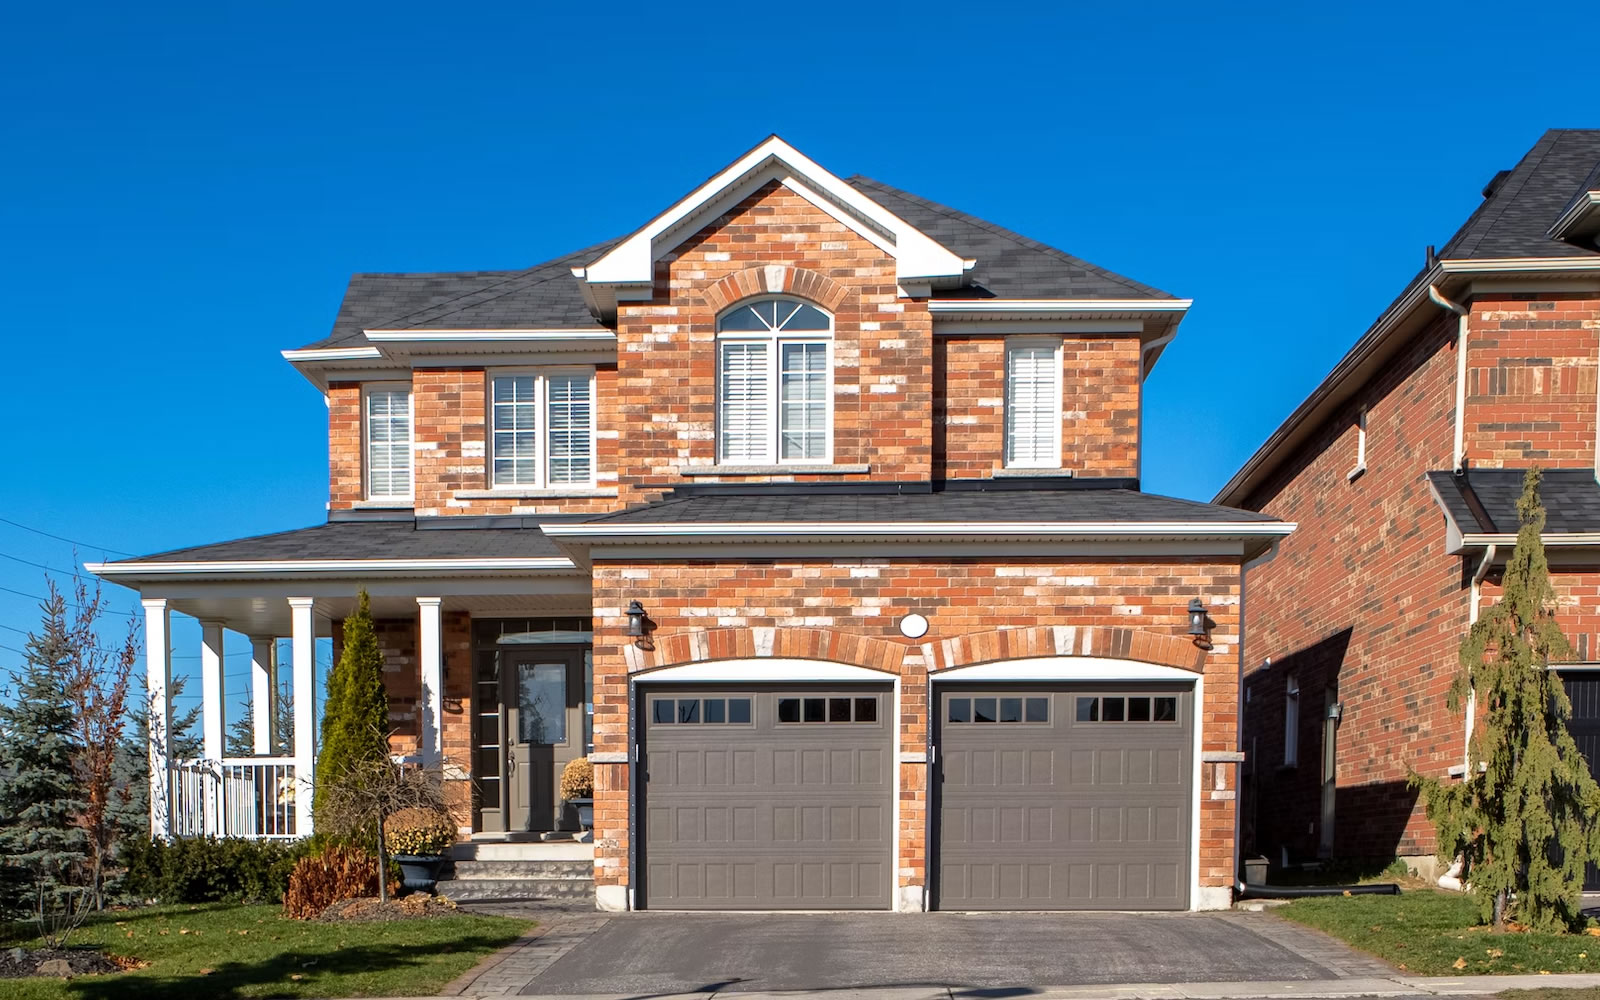 Top Tips For Residential Garage Door Maintenance